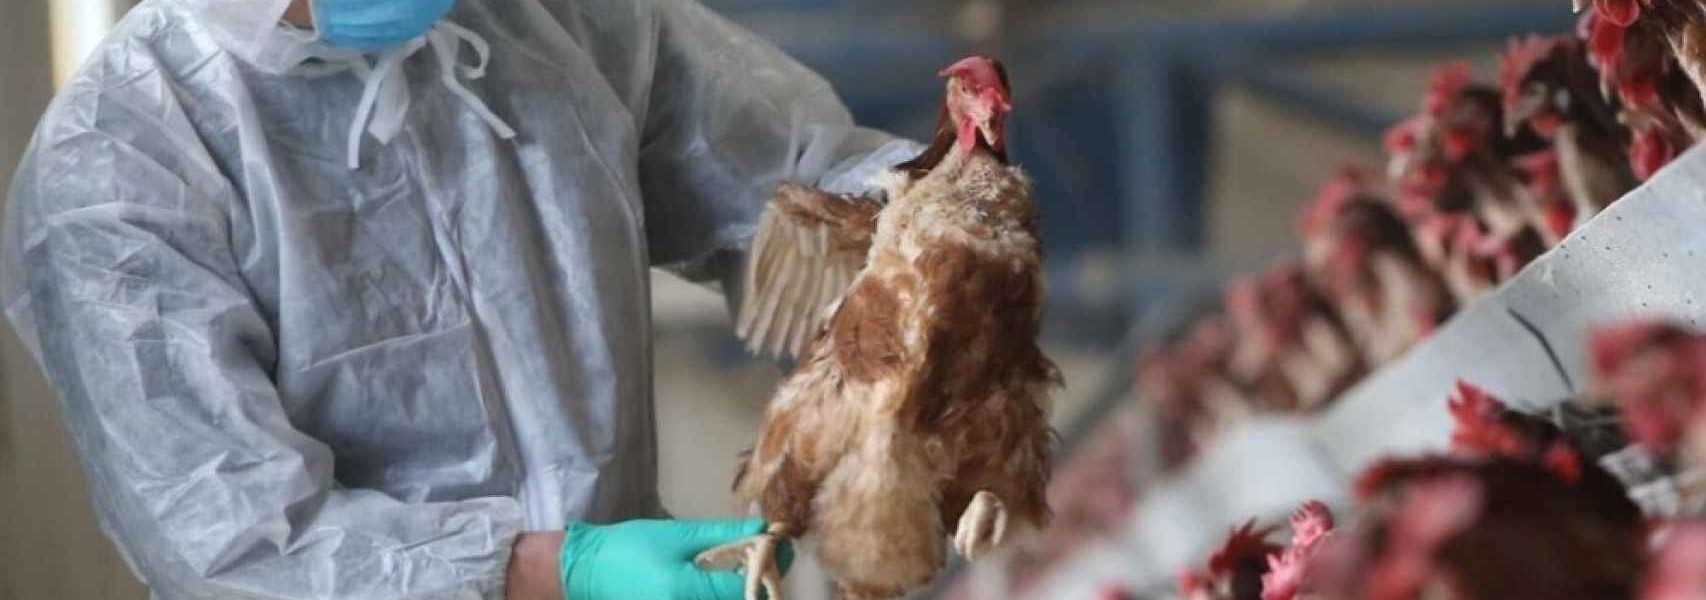 Sangrado de ojos, el extraño síntoma de la nueva cepa de gripe aviar